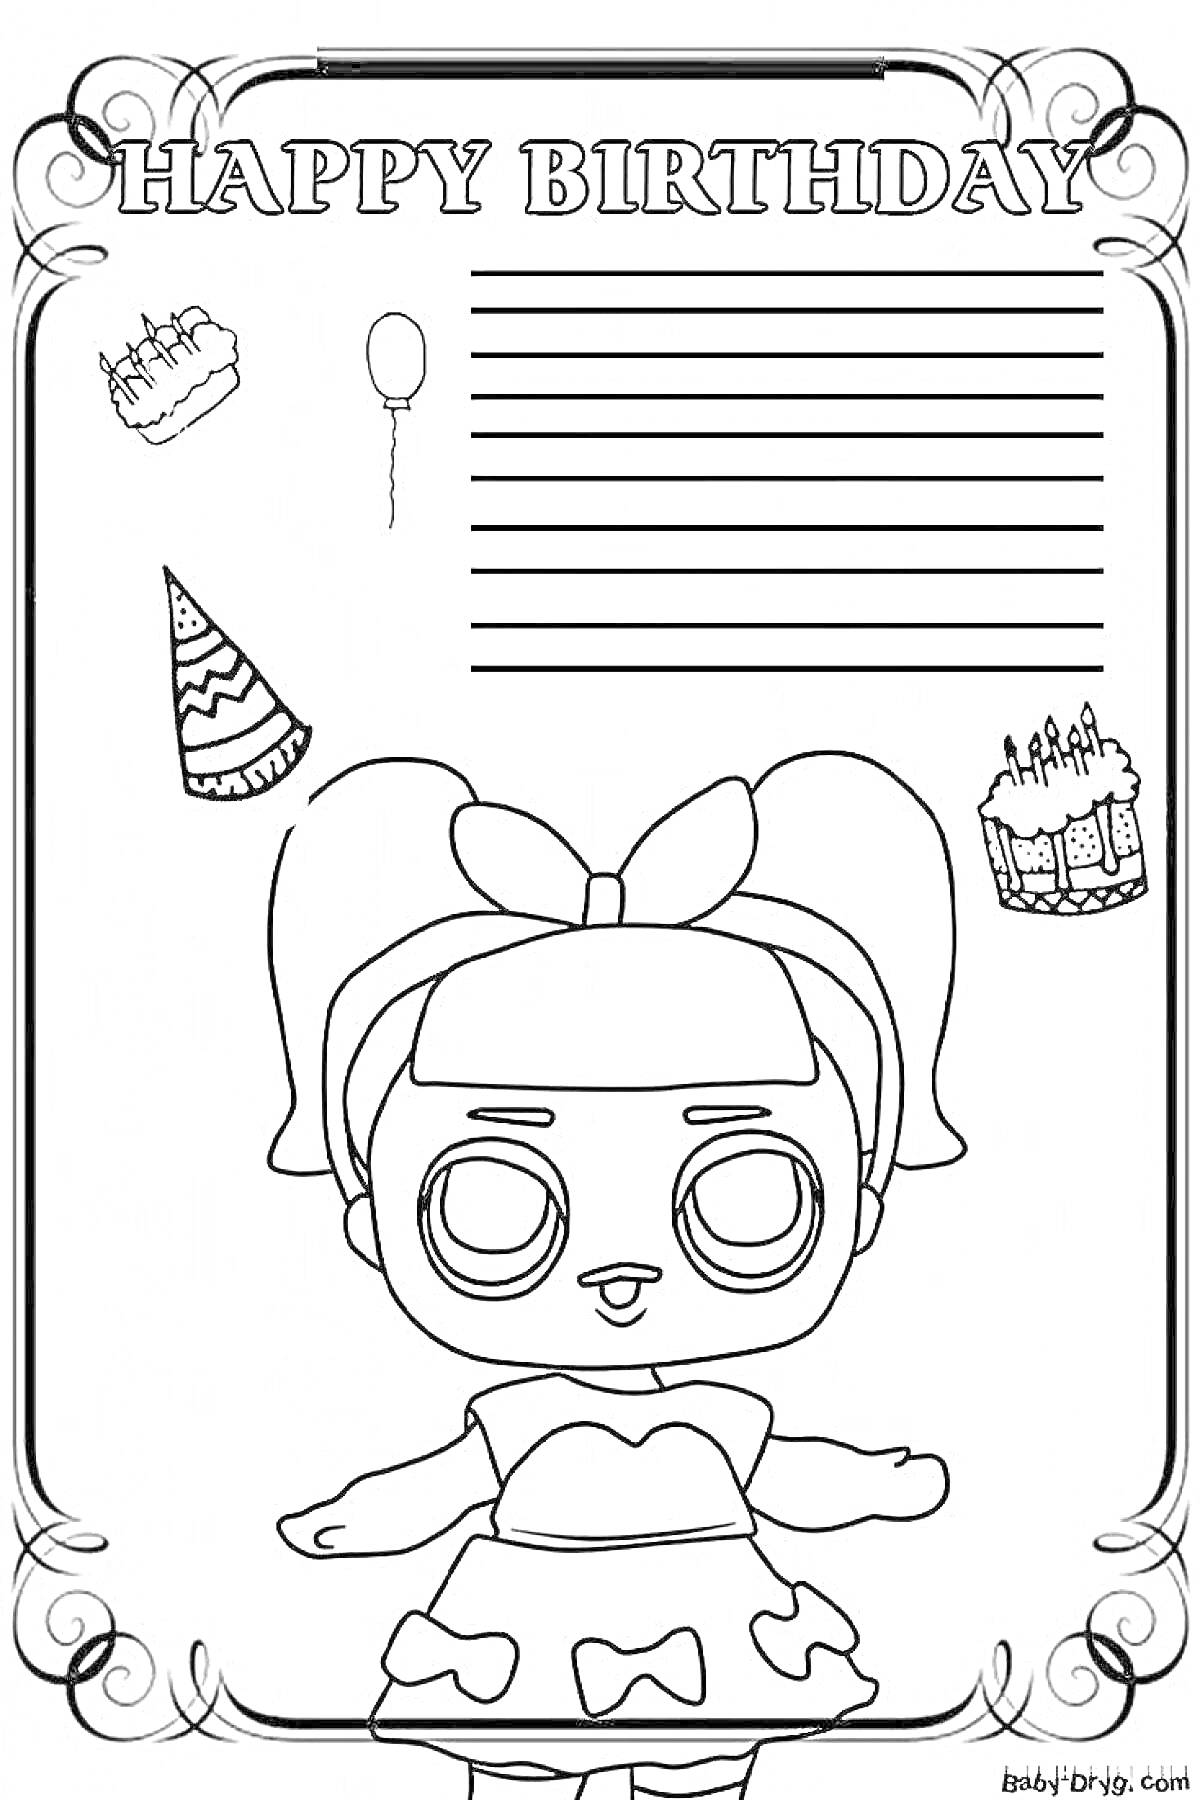 Раскраска Happy Birthday. Куколка с бантом, торт, воздушный шарик, праздничный колпак, пирожное, свечи, линии для текста